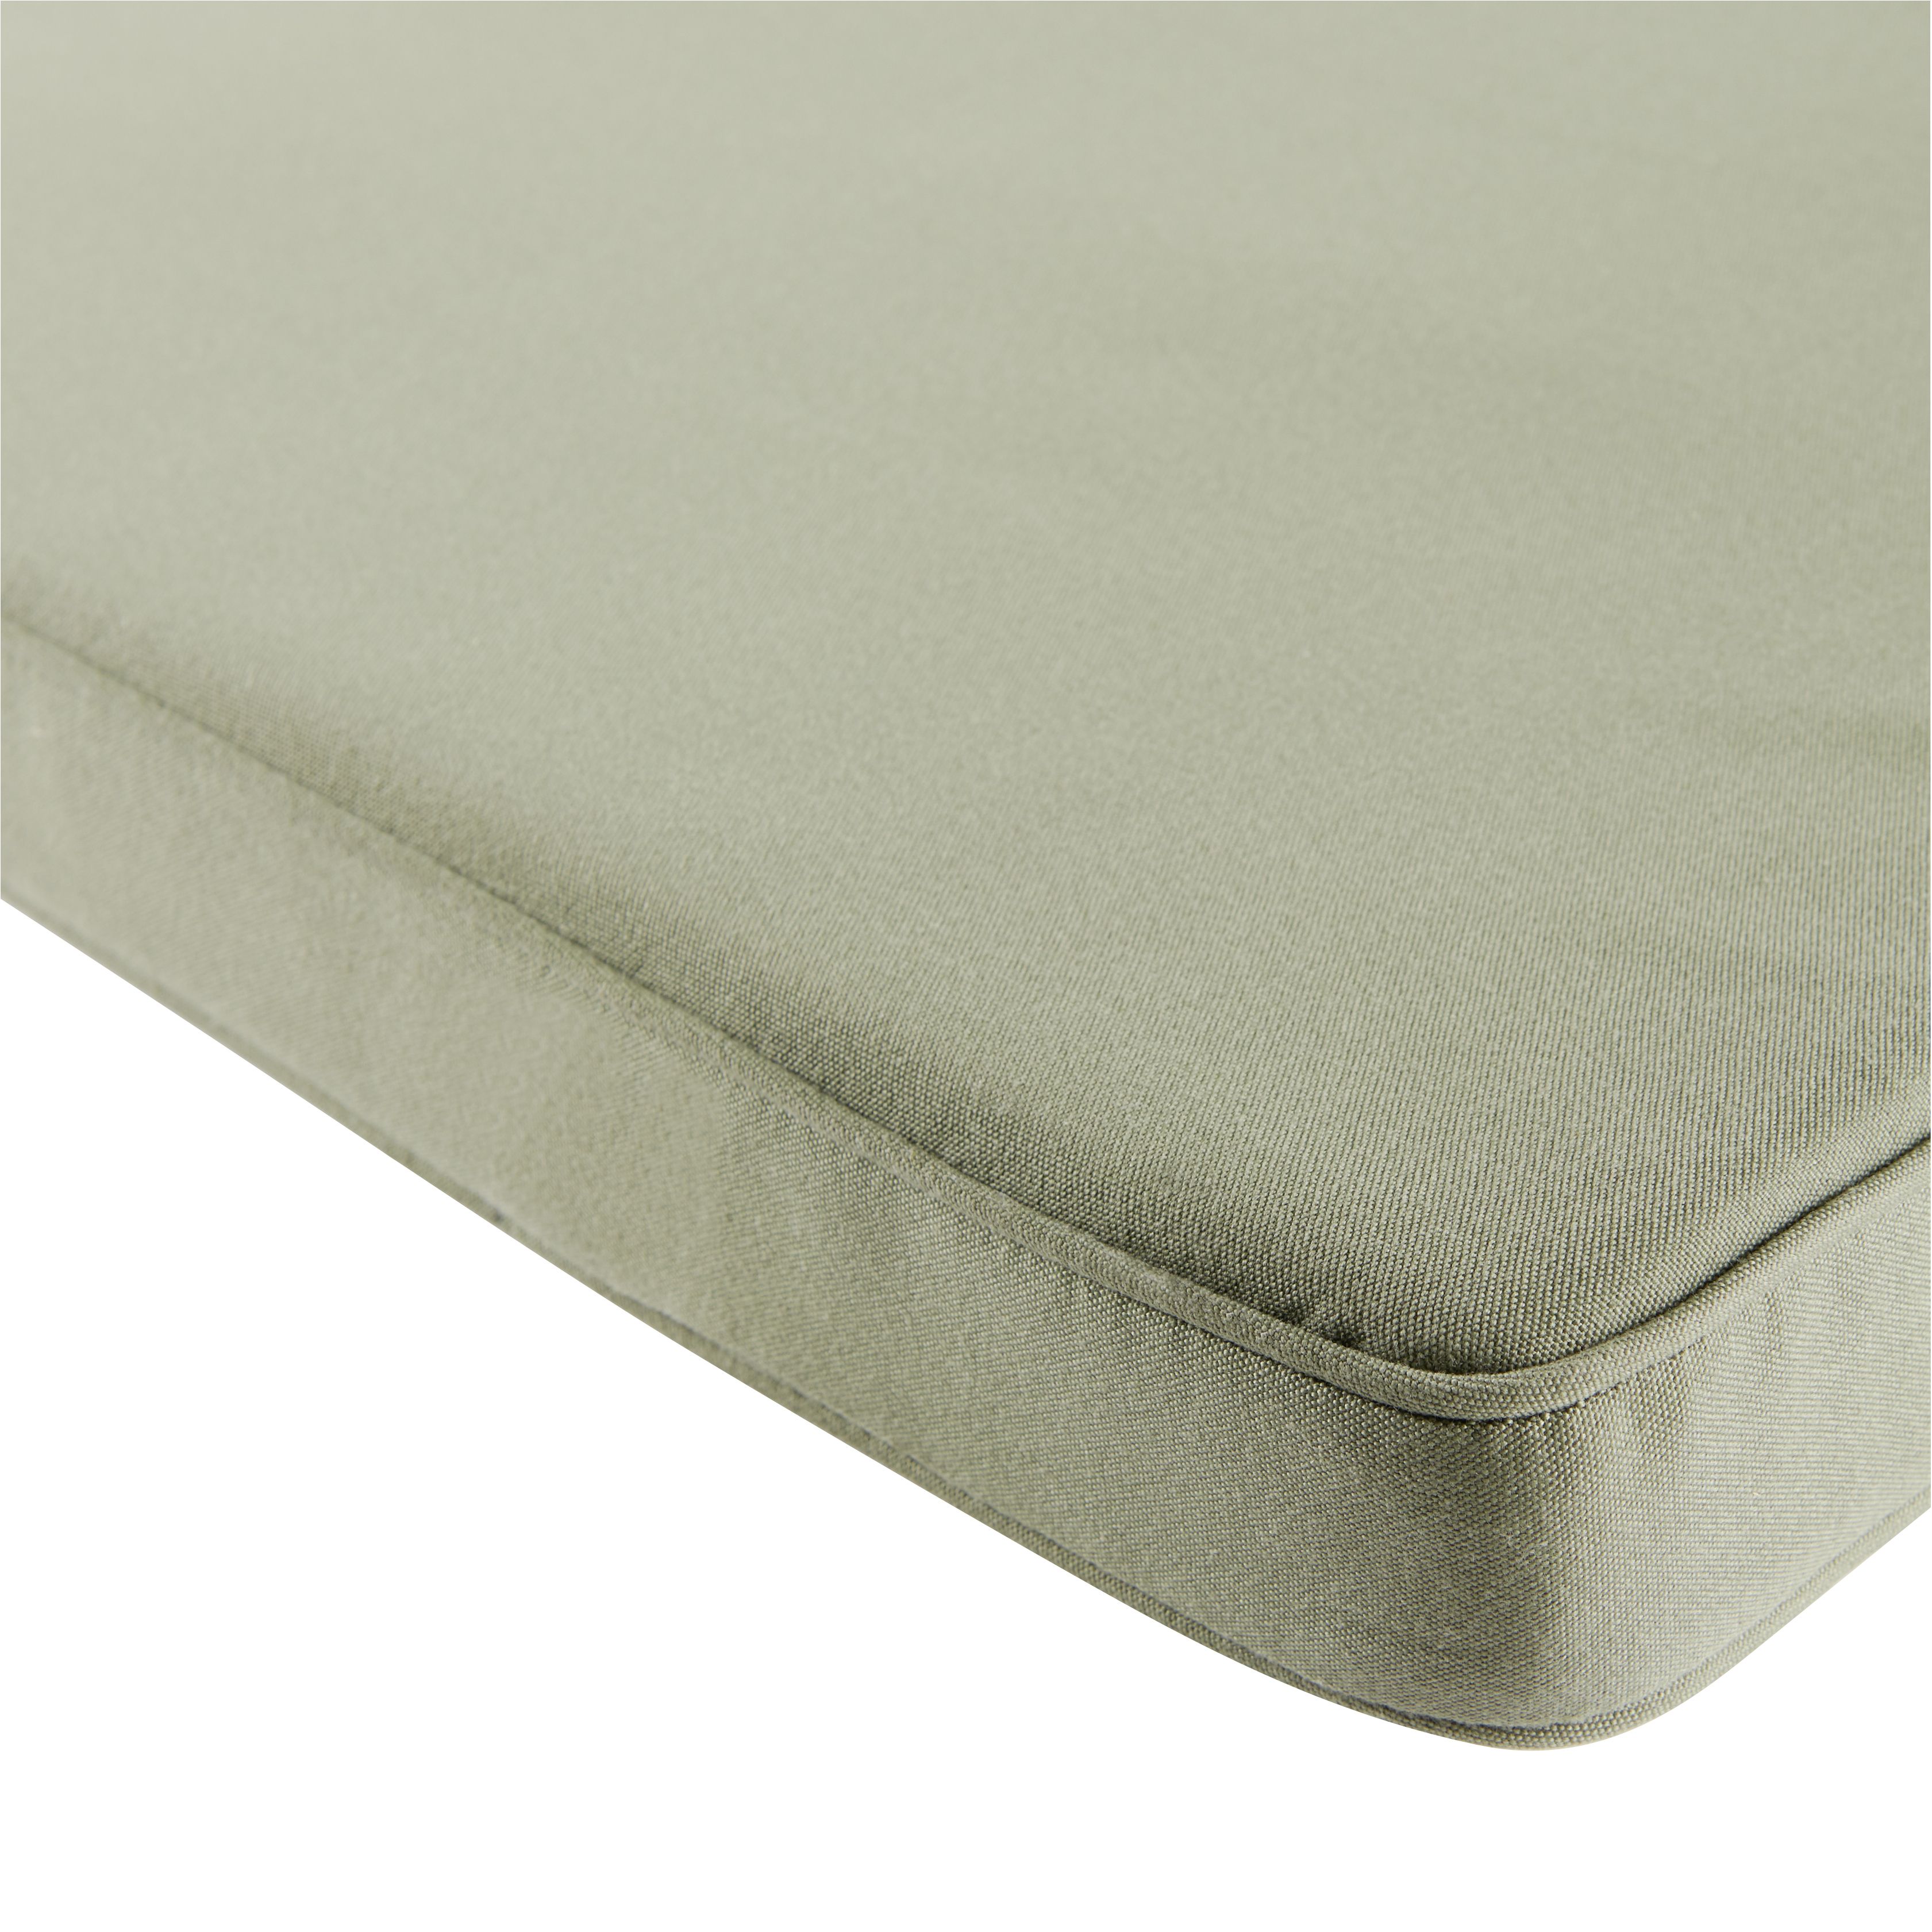 GoodHome Tiga Deep lichen green Plain Outdoor Sunlounger cushion (L)190cm x (W)55cm